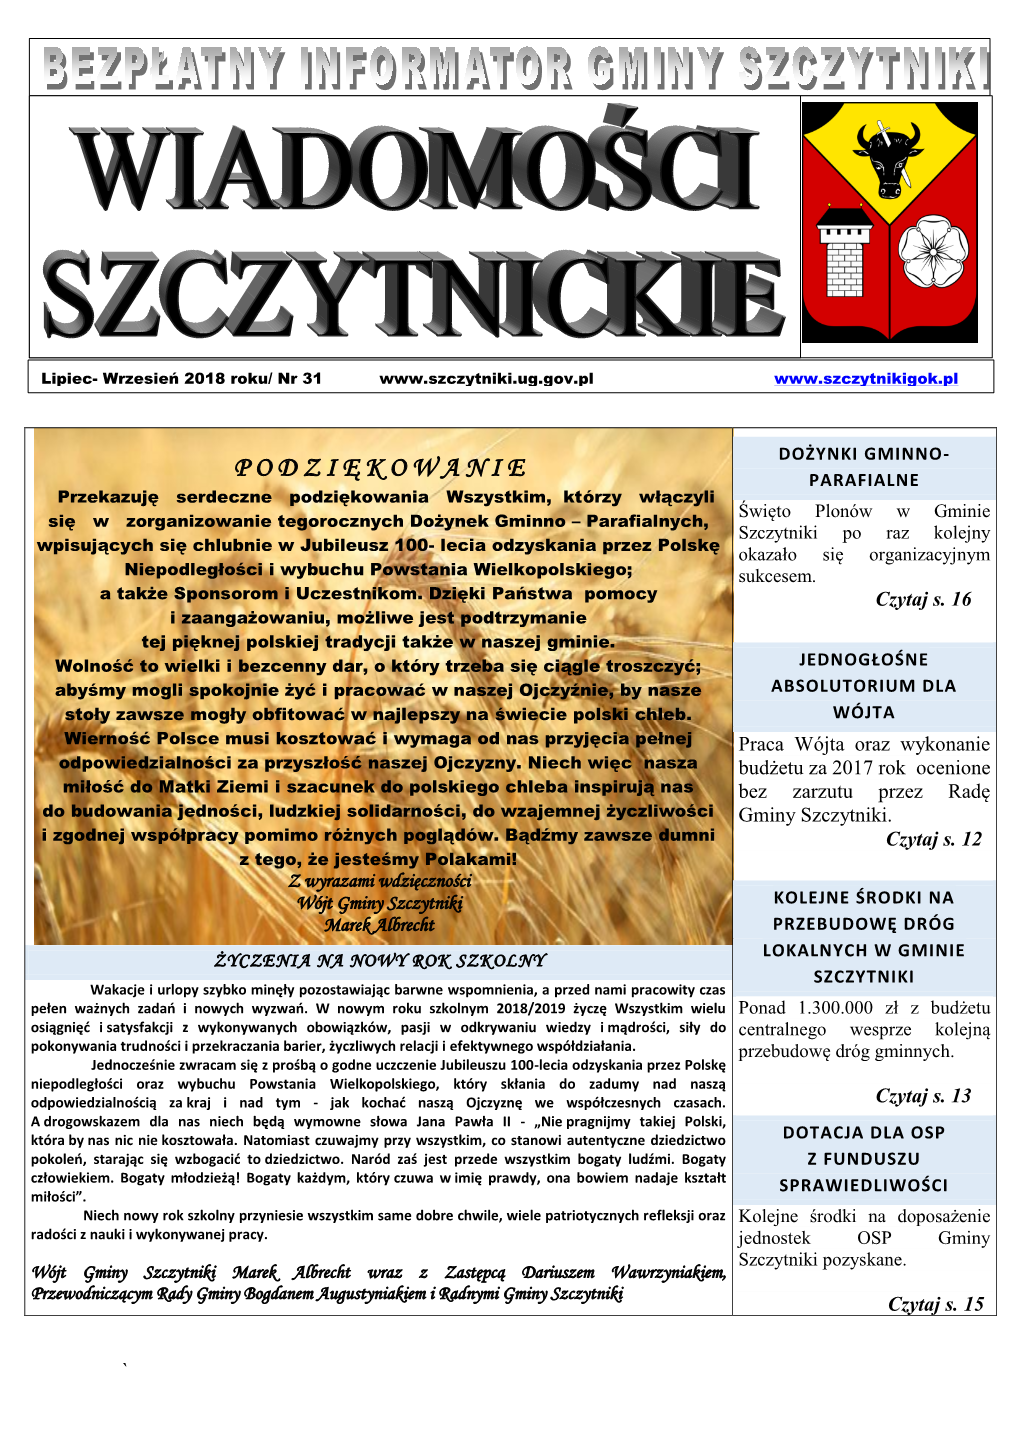 Wielkopolscy Rolnicy Roku 2013 Ze Szczytnik